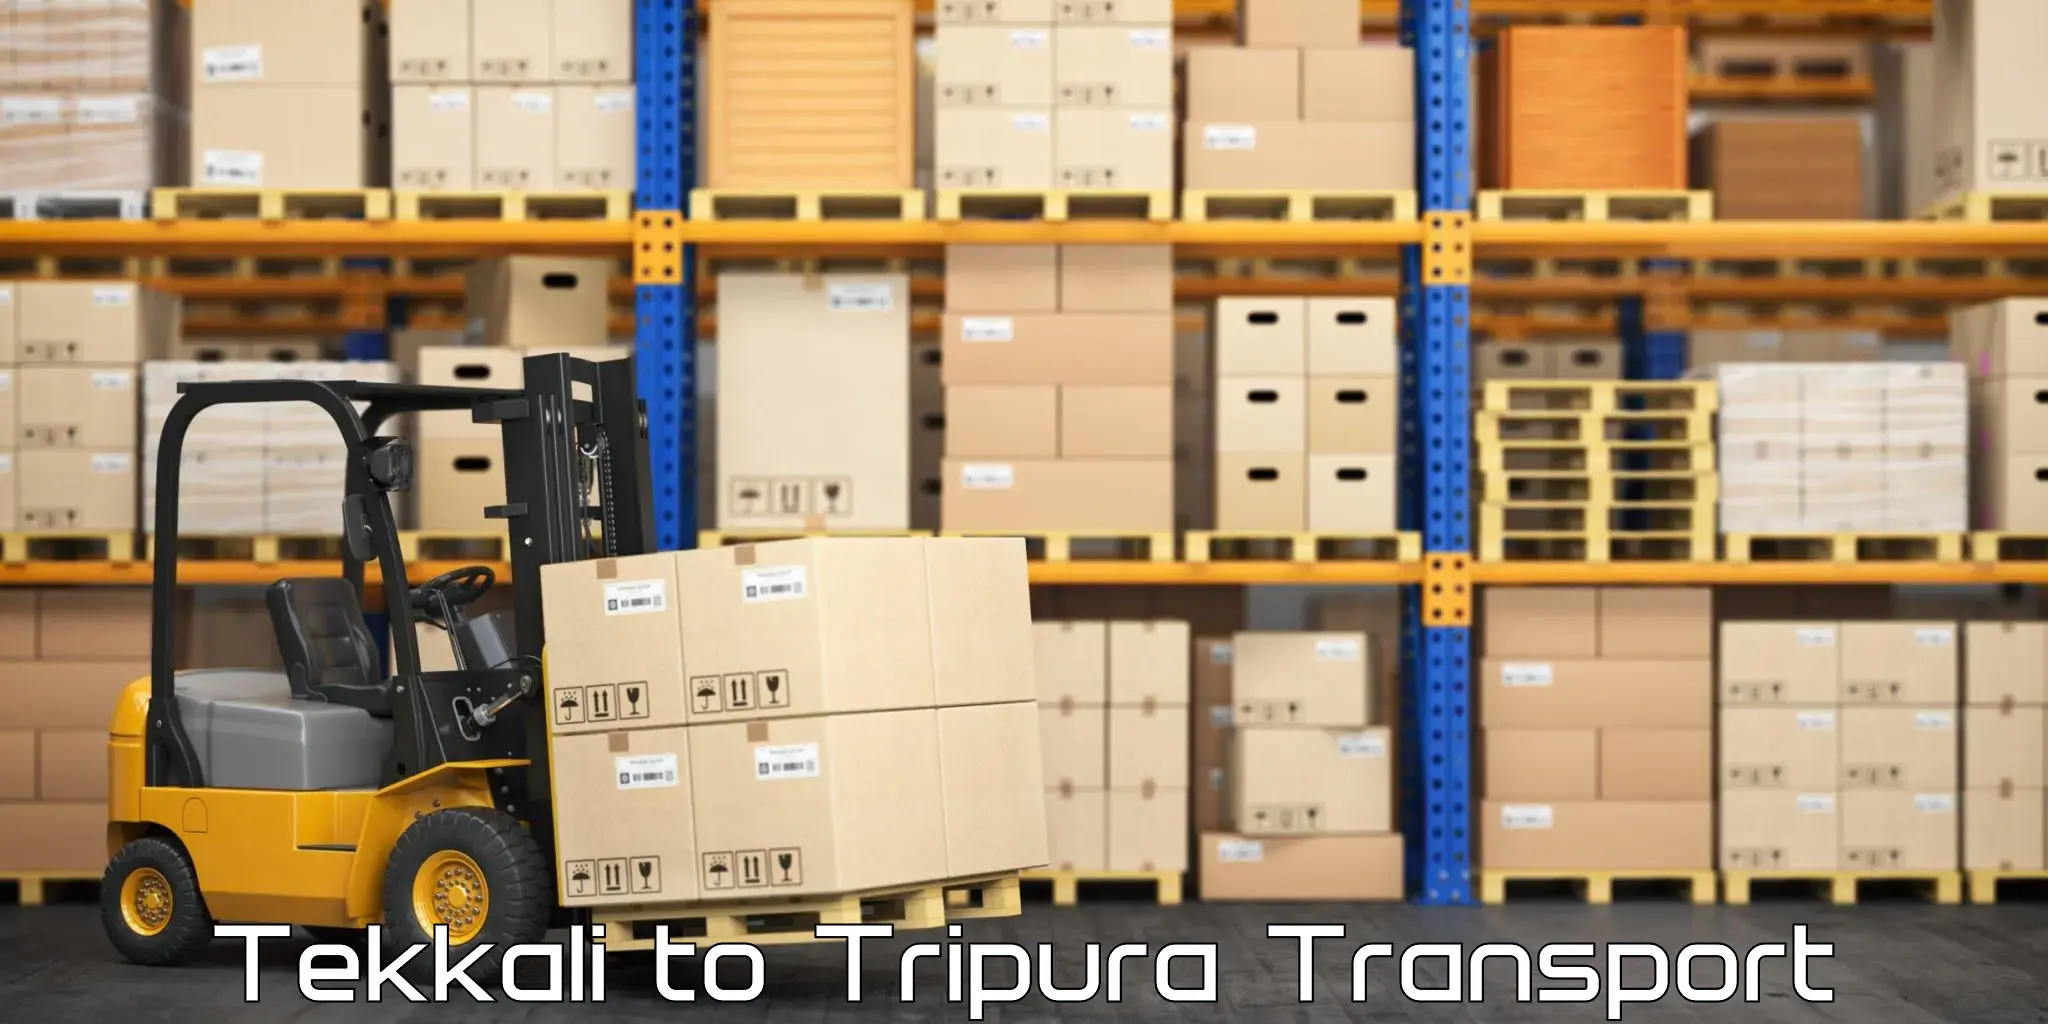 Logistics transportation services Tekkali to Sonamura